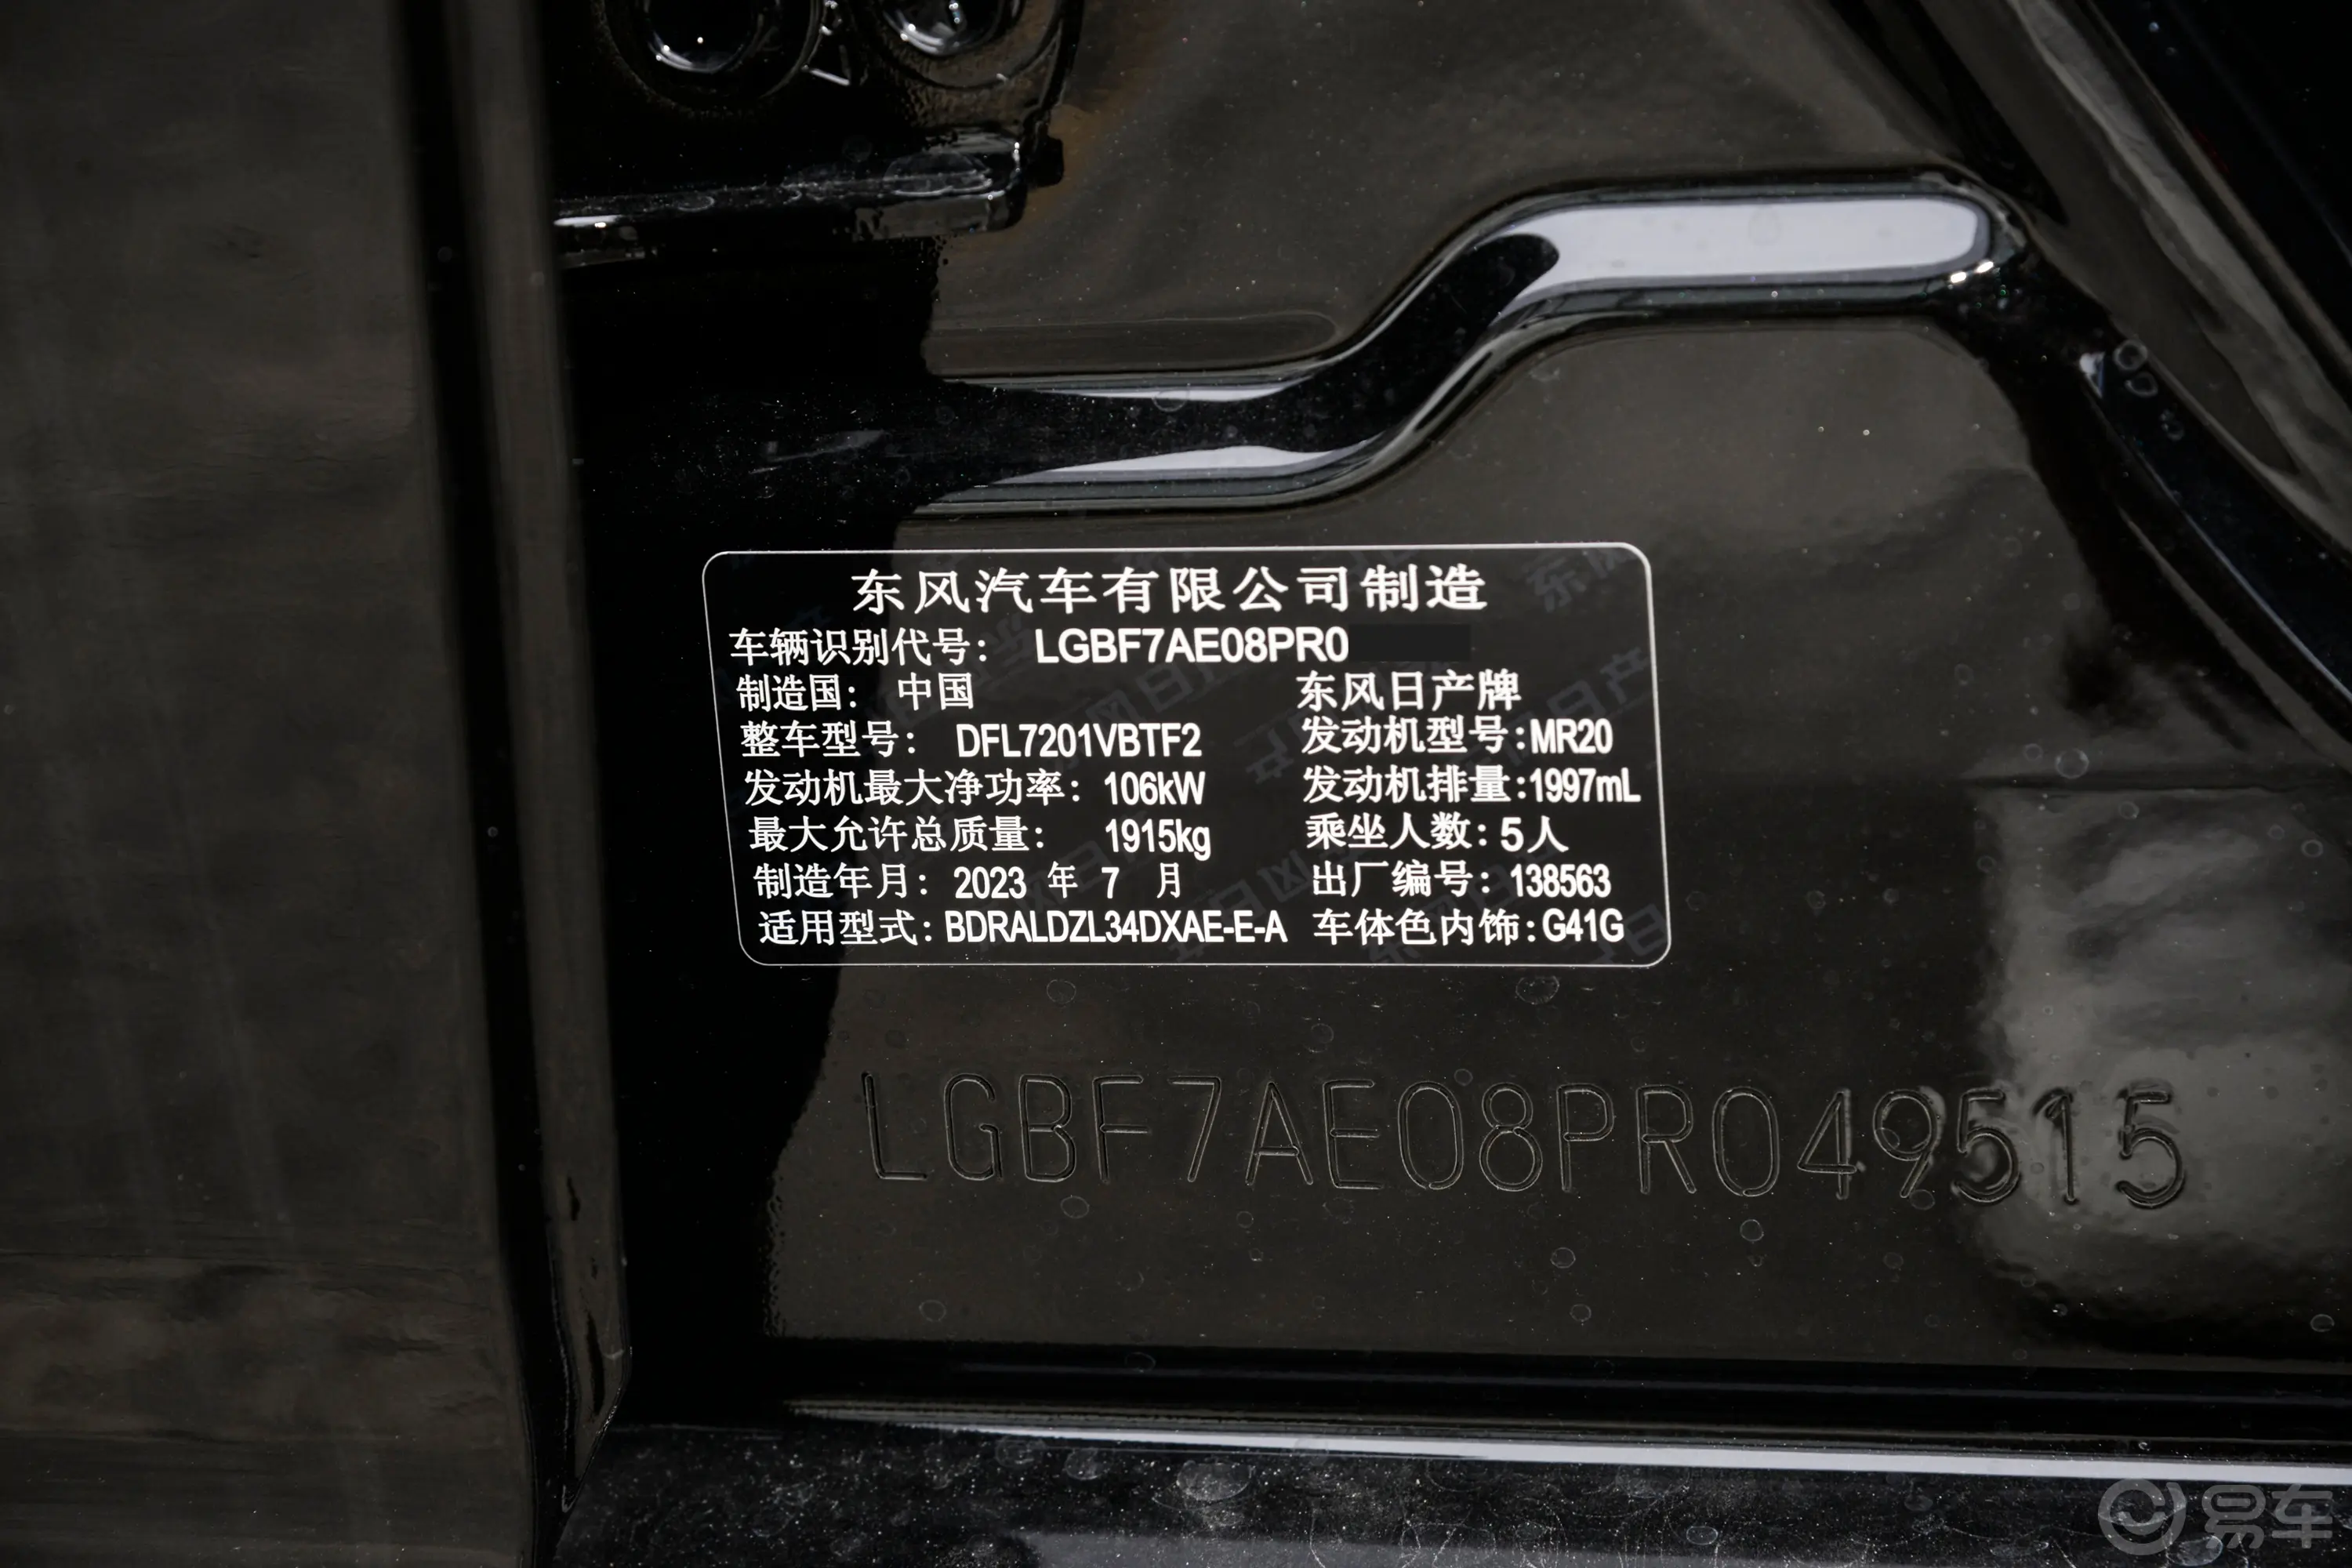 天籁2.0L XL-TLS 悦享版车辆信息铭牌